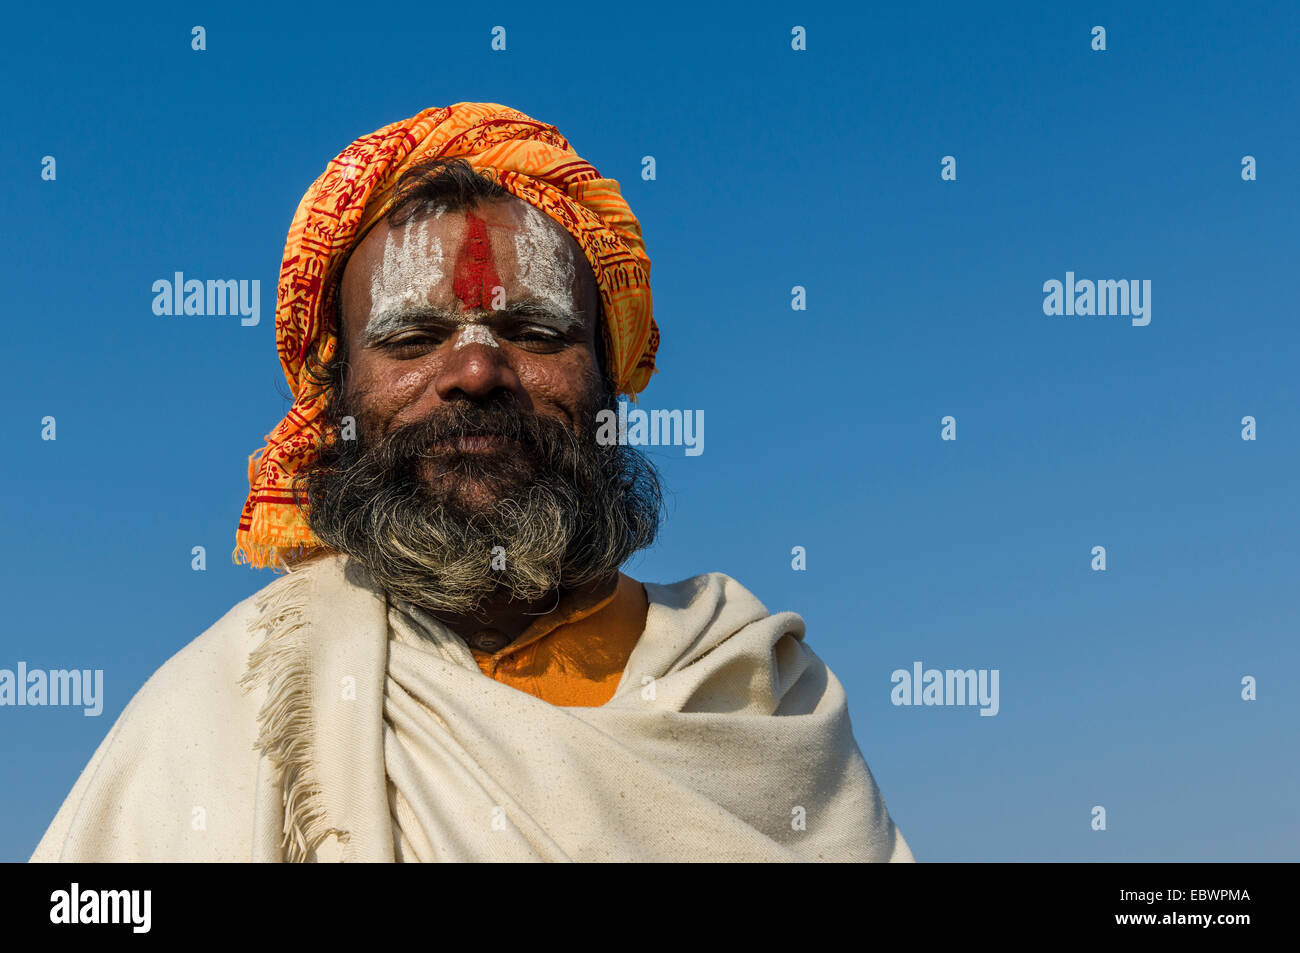 Portrait d'un Rama sadhu, saint homme, au Sangam, le confluent des fleuves Ganges, Yamuna et Saraswati Banque D'Images